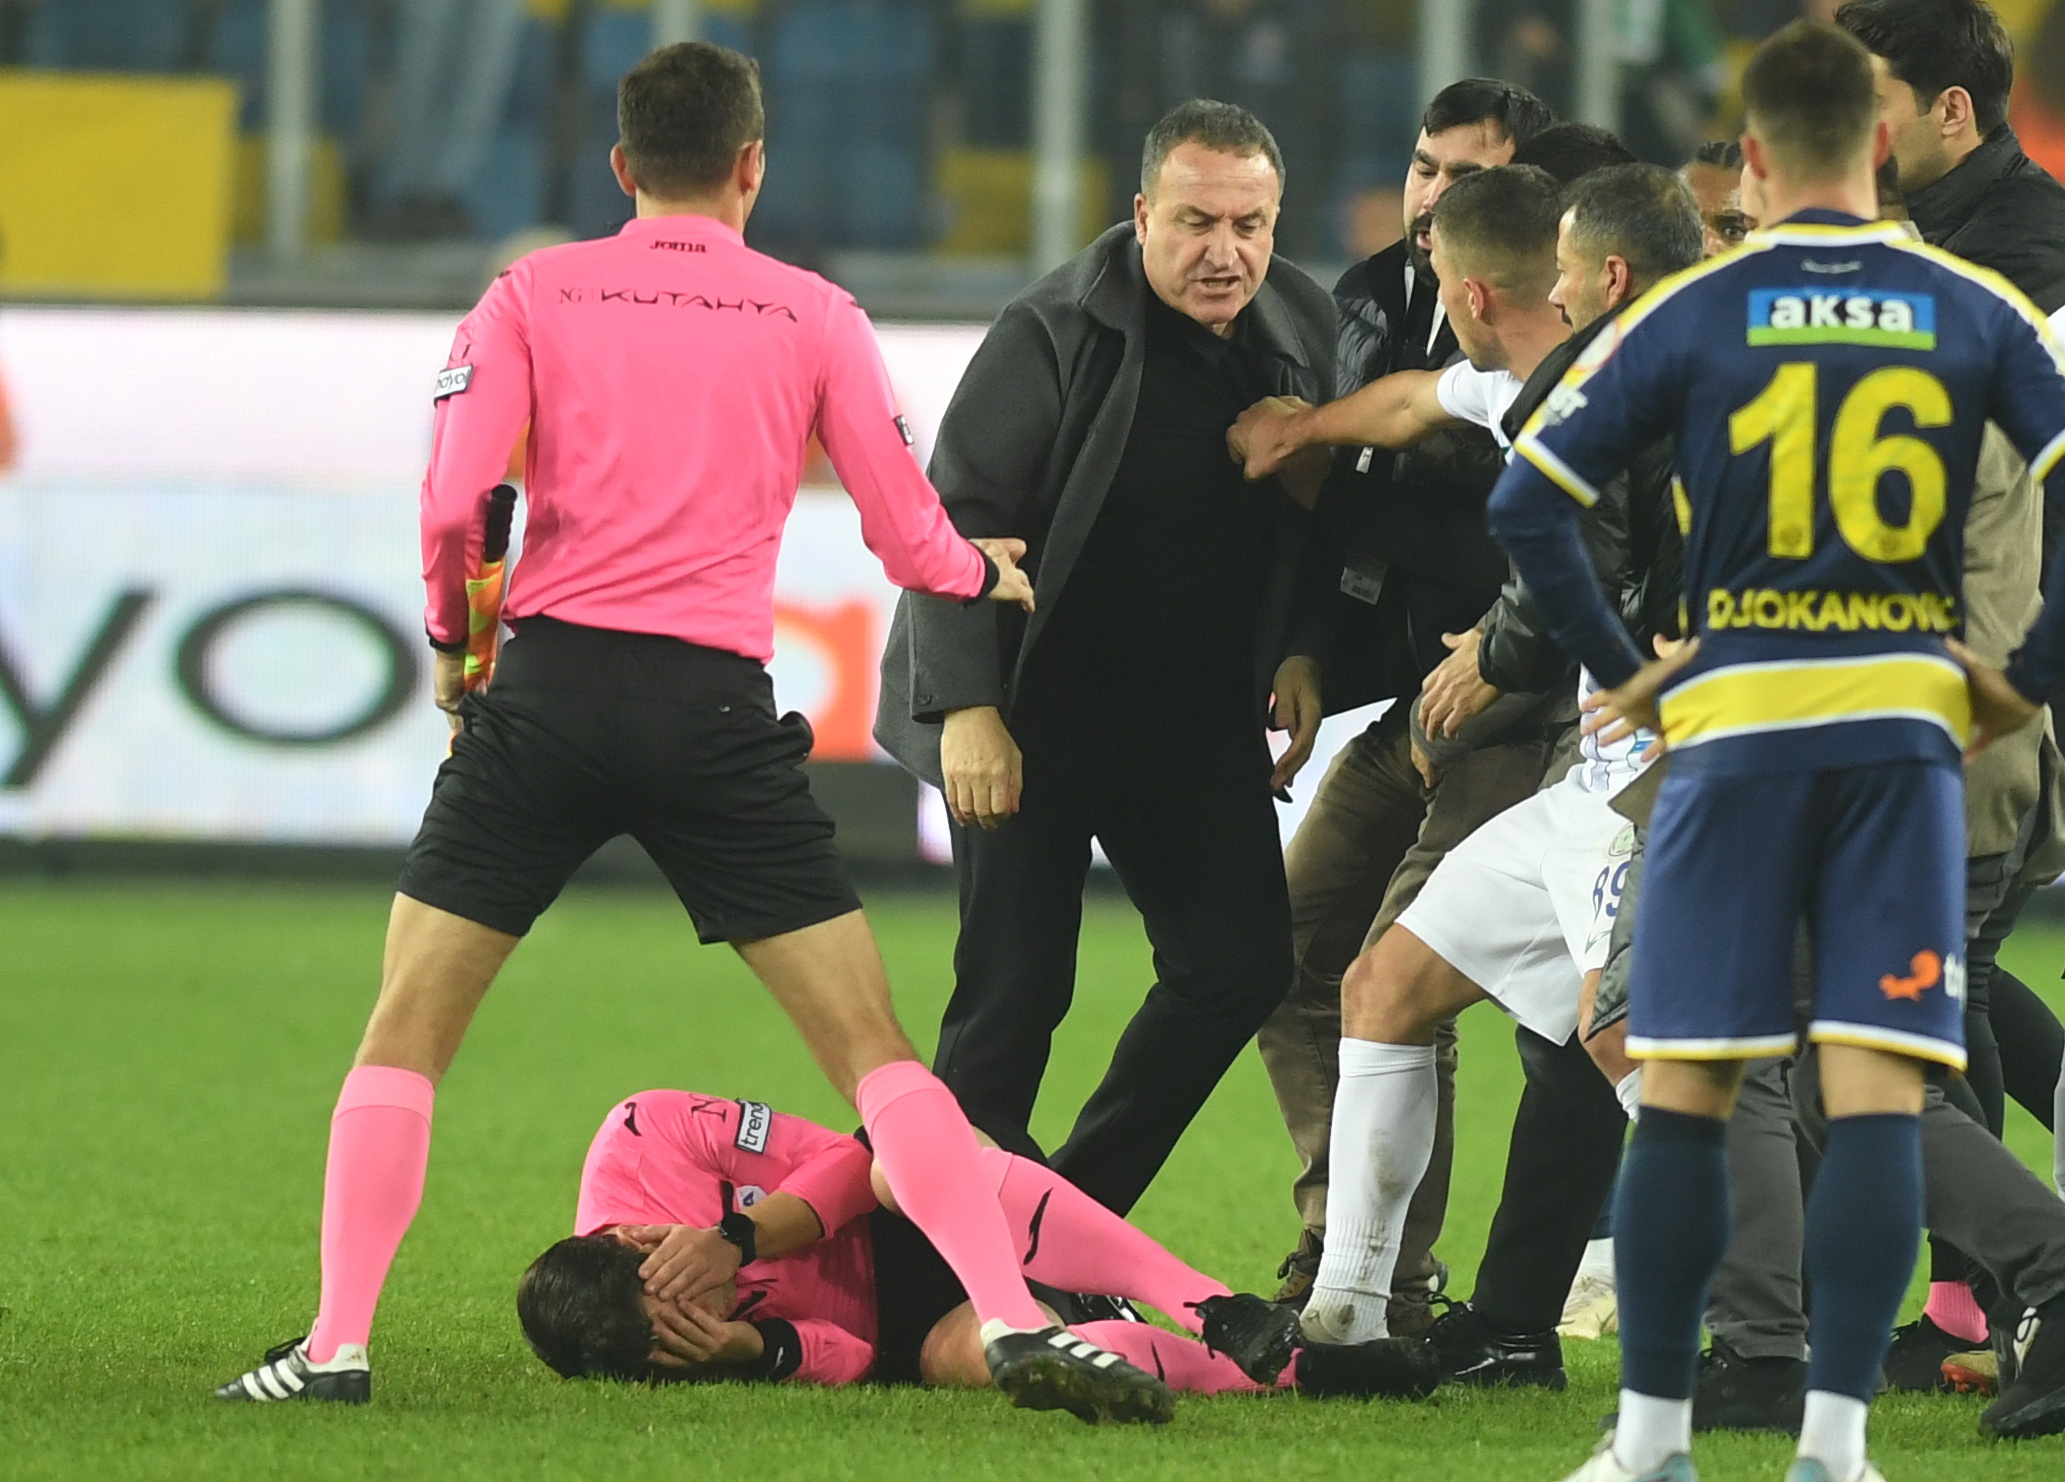 Schiedsrichter Meler hält sein Gesicht, während Koca zuschaut